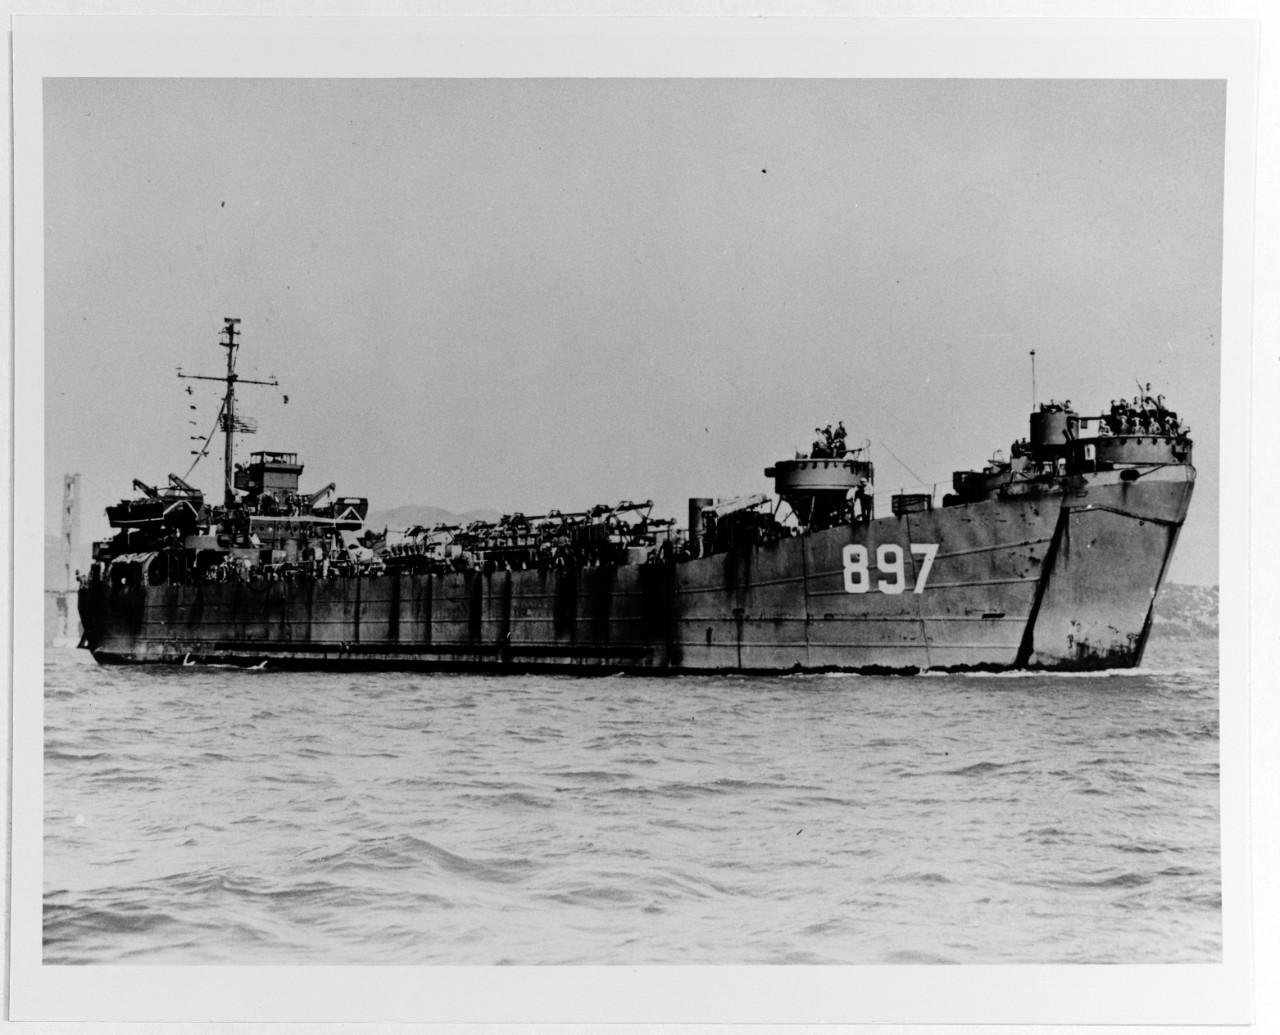 USS LST-897